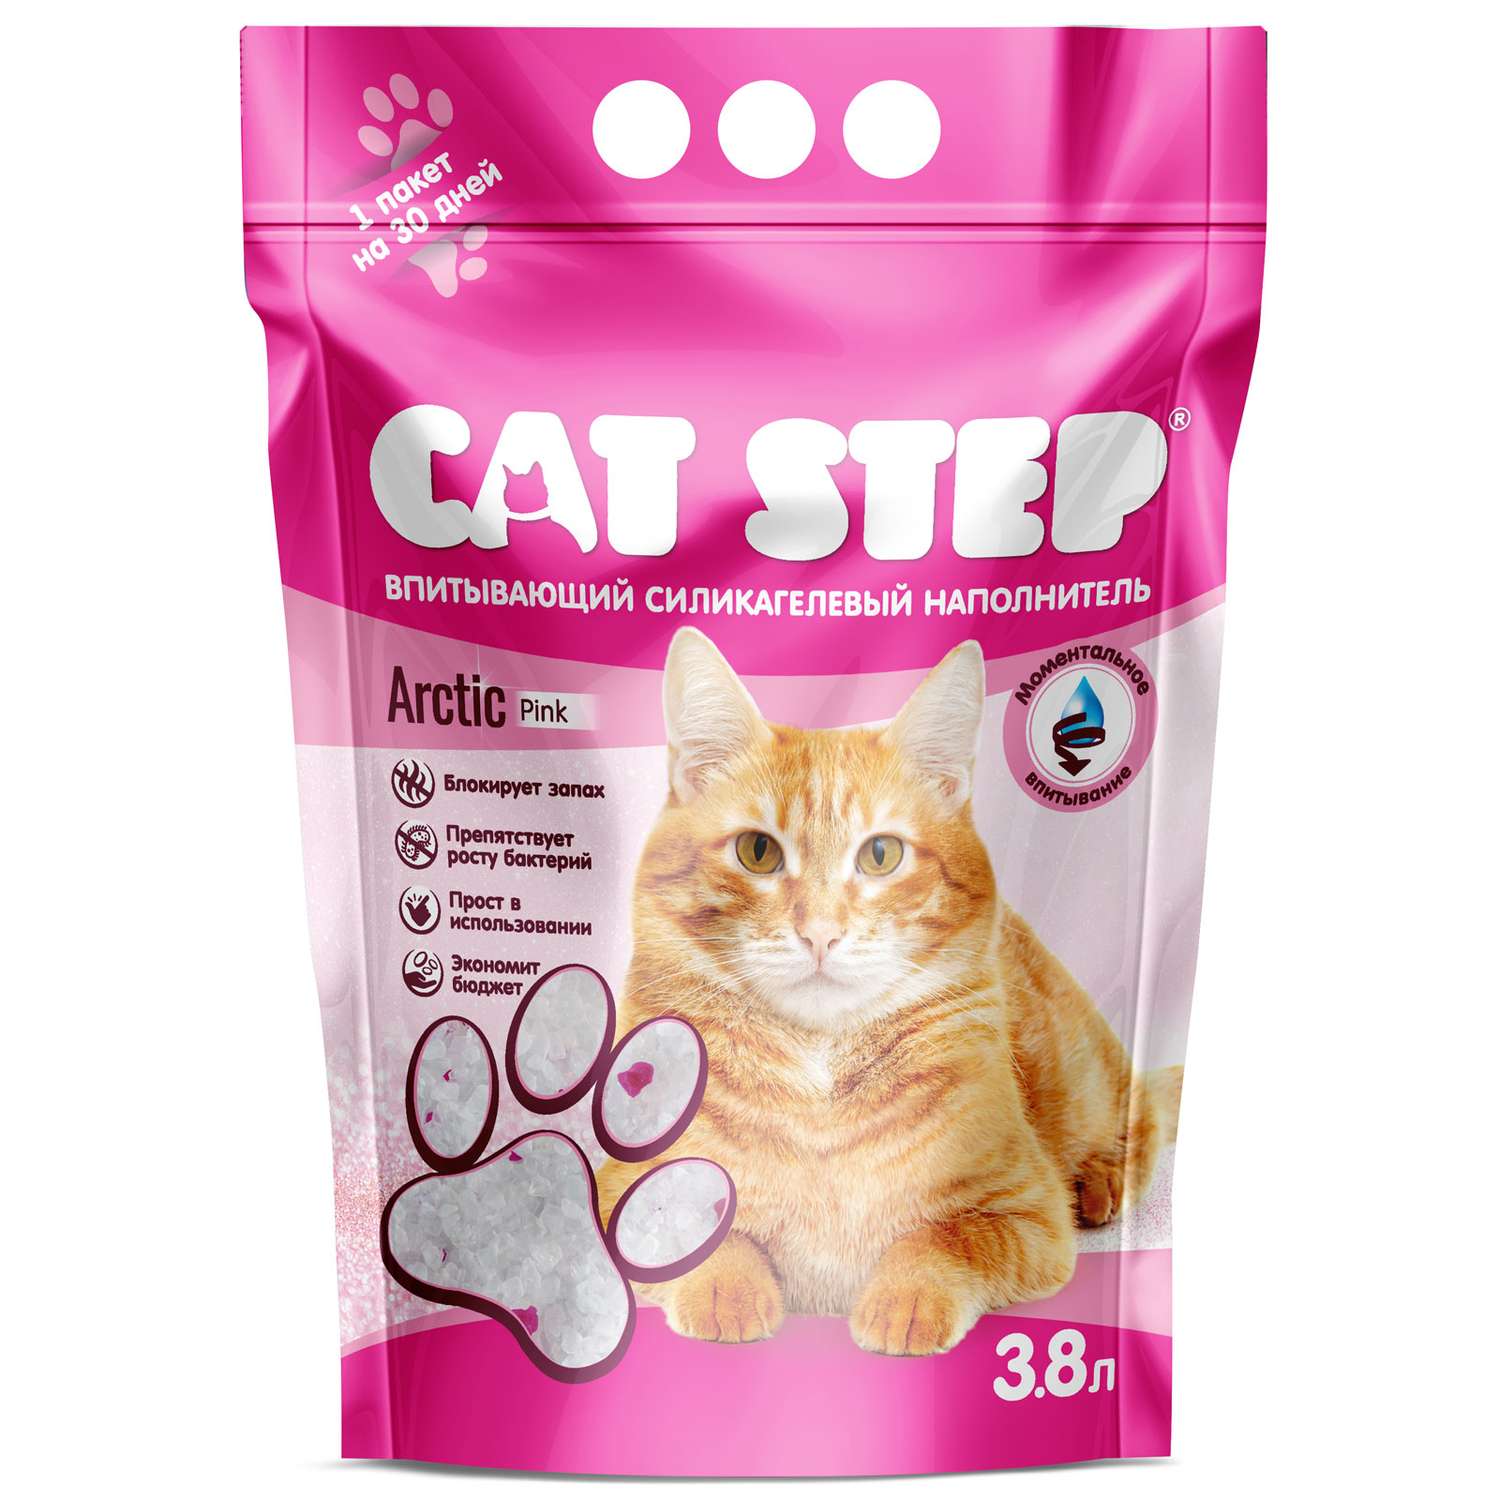 Наполнитель для кошек Cat Step Crystal Pink впитывающий силикагелевый 3.8л - фото 2